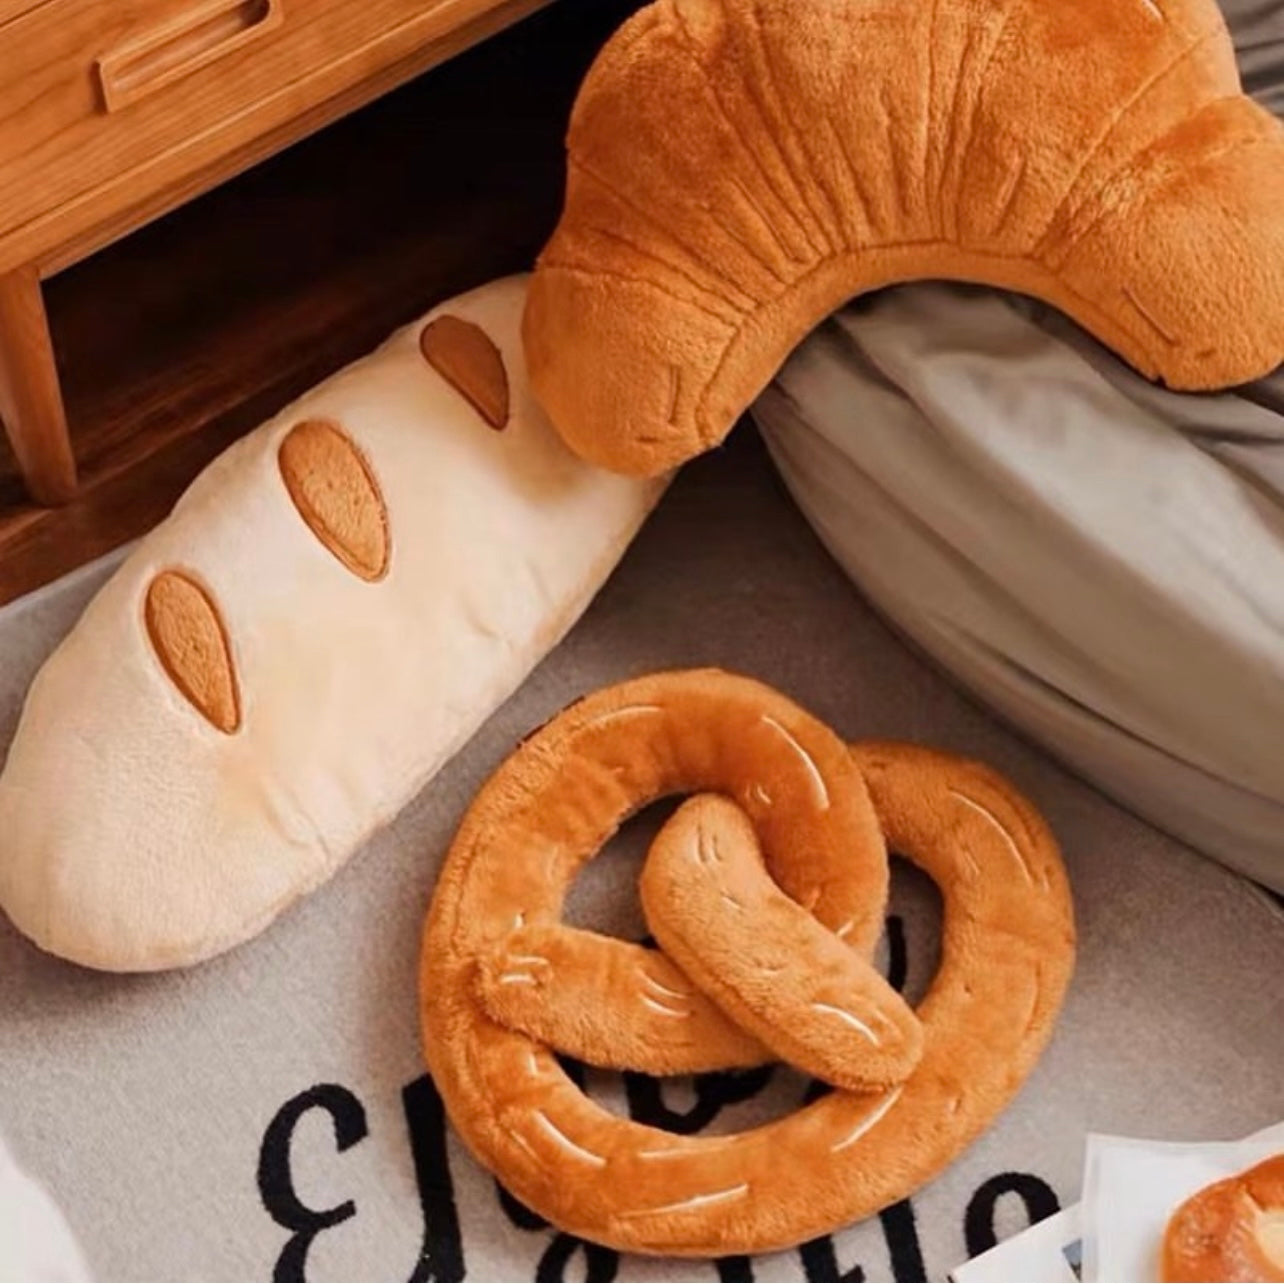 Hommie Bakery Pillow Set (Bread, pretzels, croissants) HBSF010